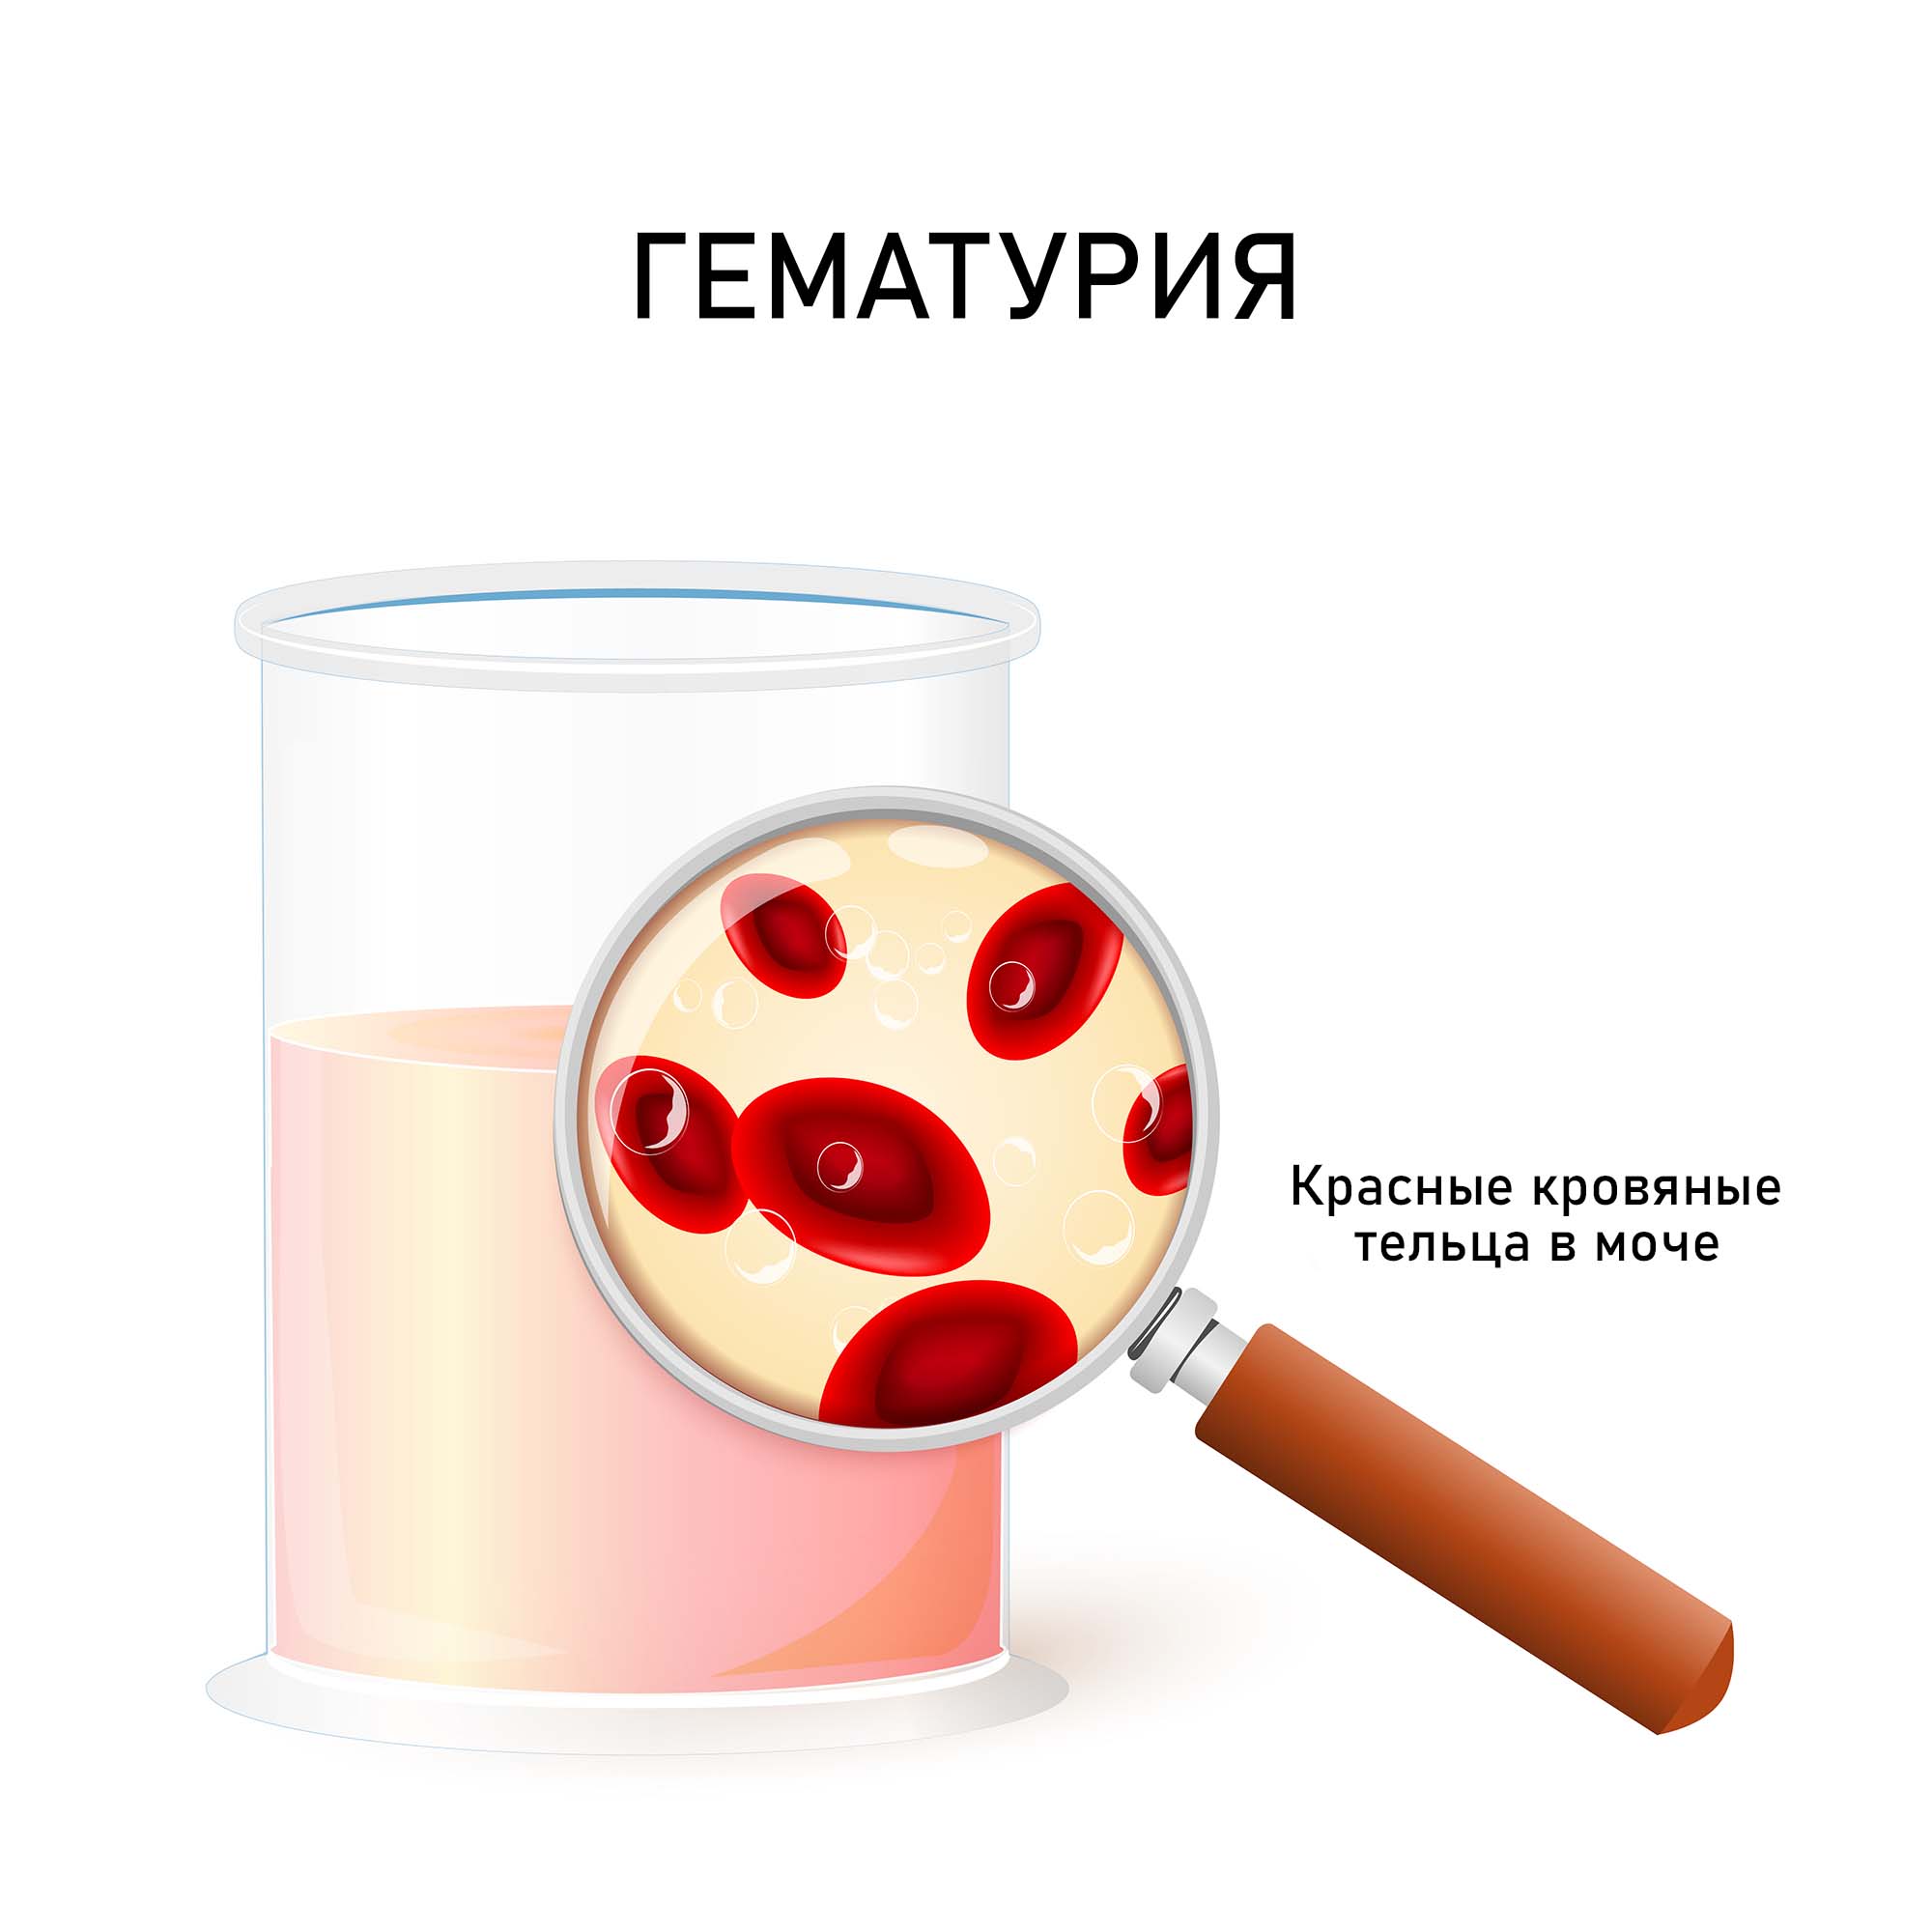 Кровь в моче (гематурия)